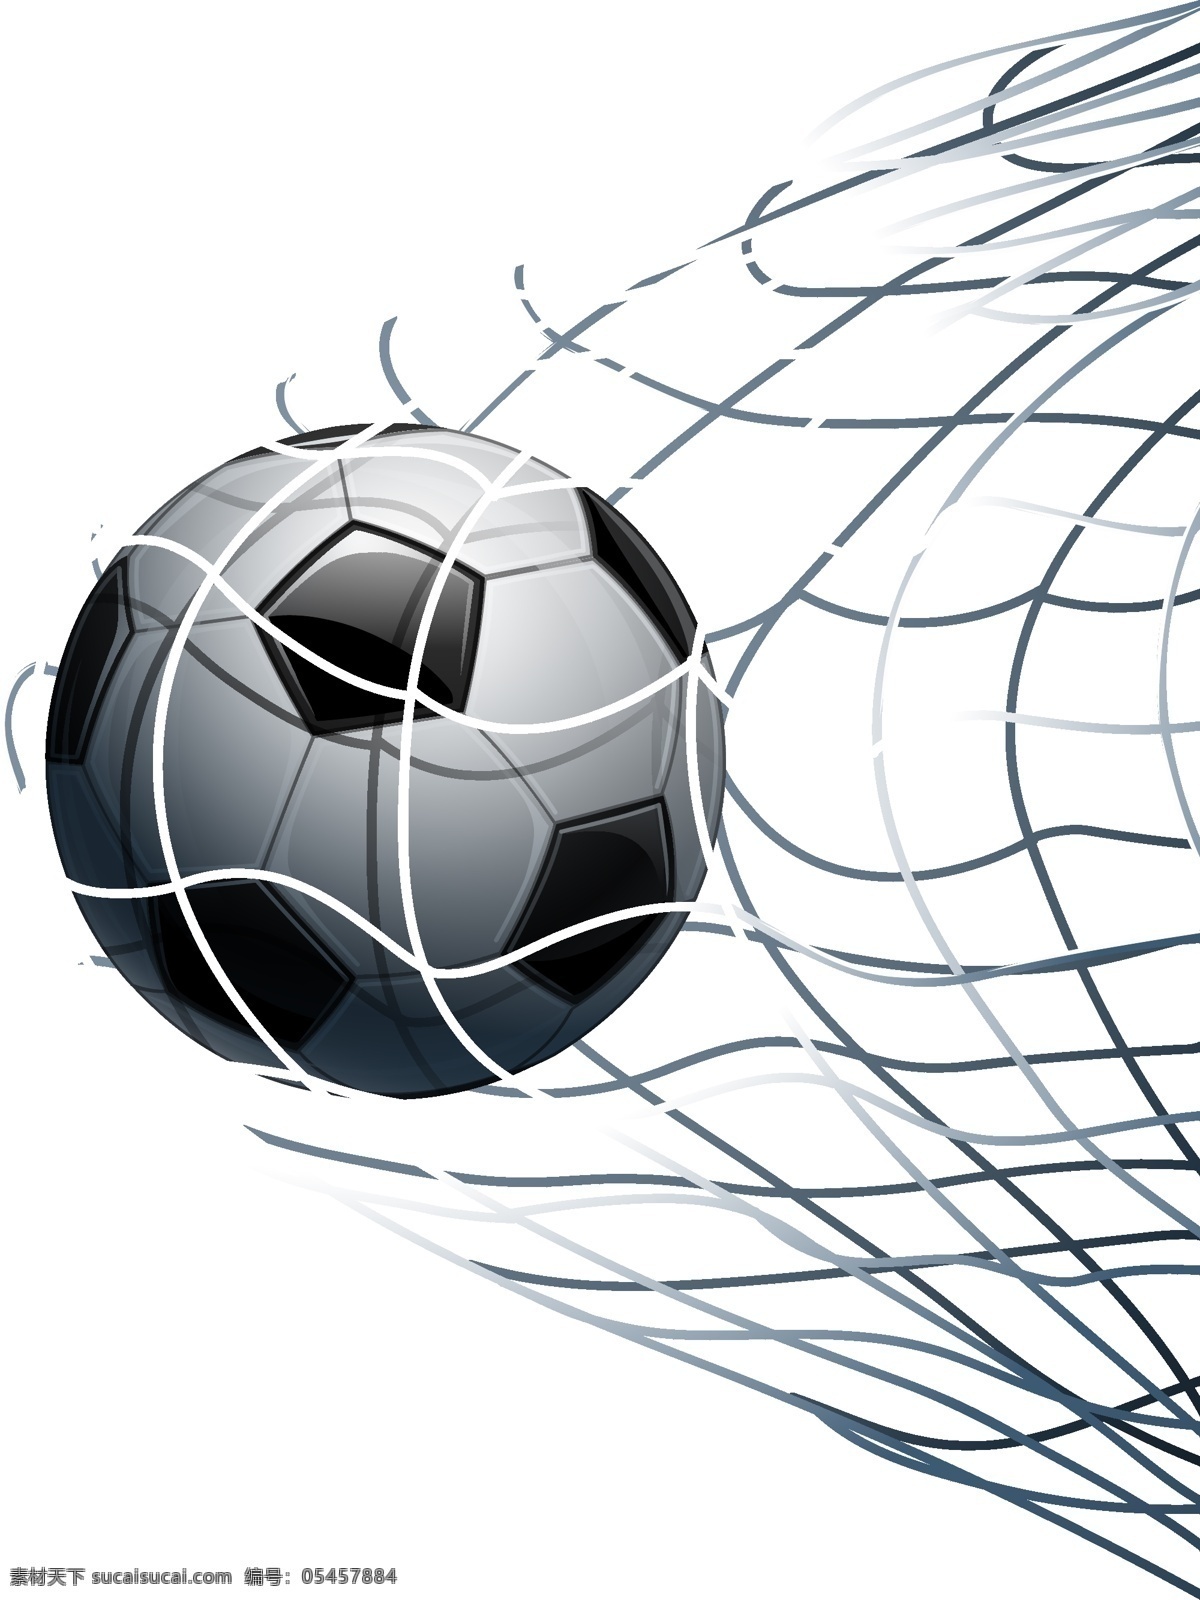 足球 射门 运动 矢量 素材图片 足球射门 运动矢量素材 矢量素材